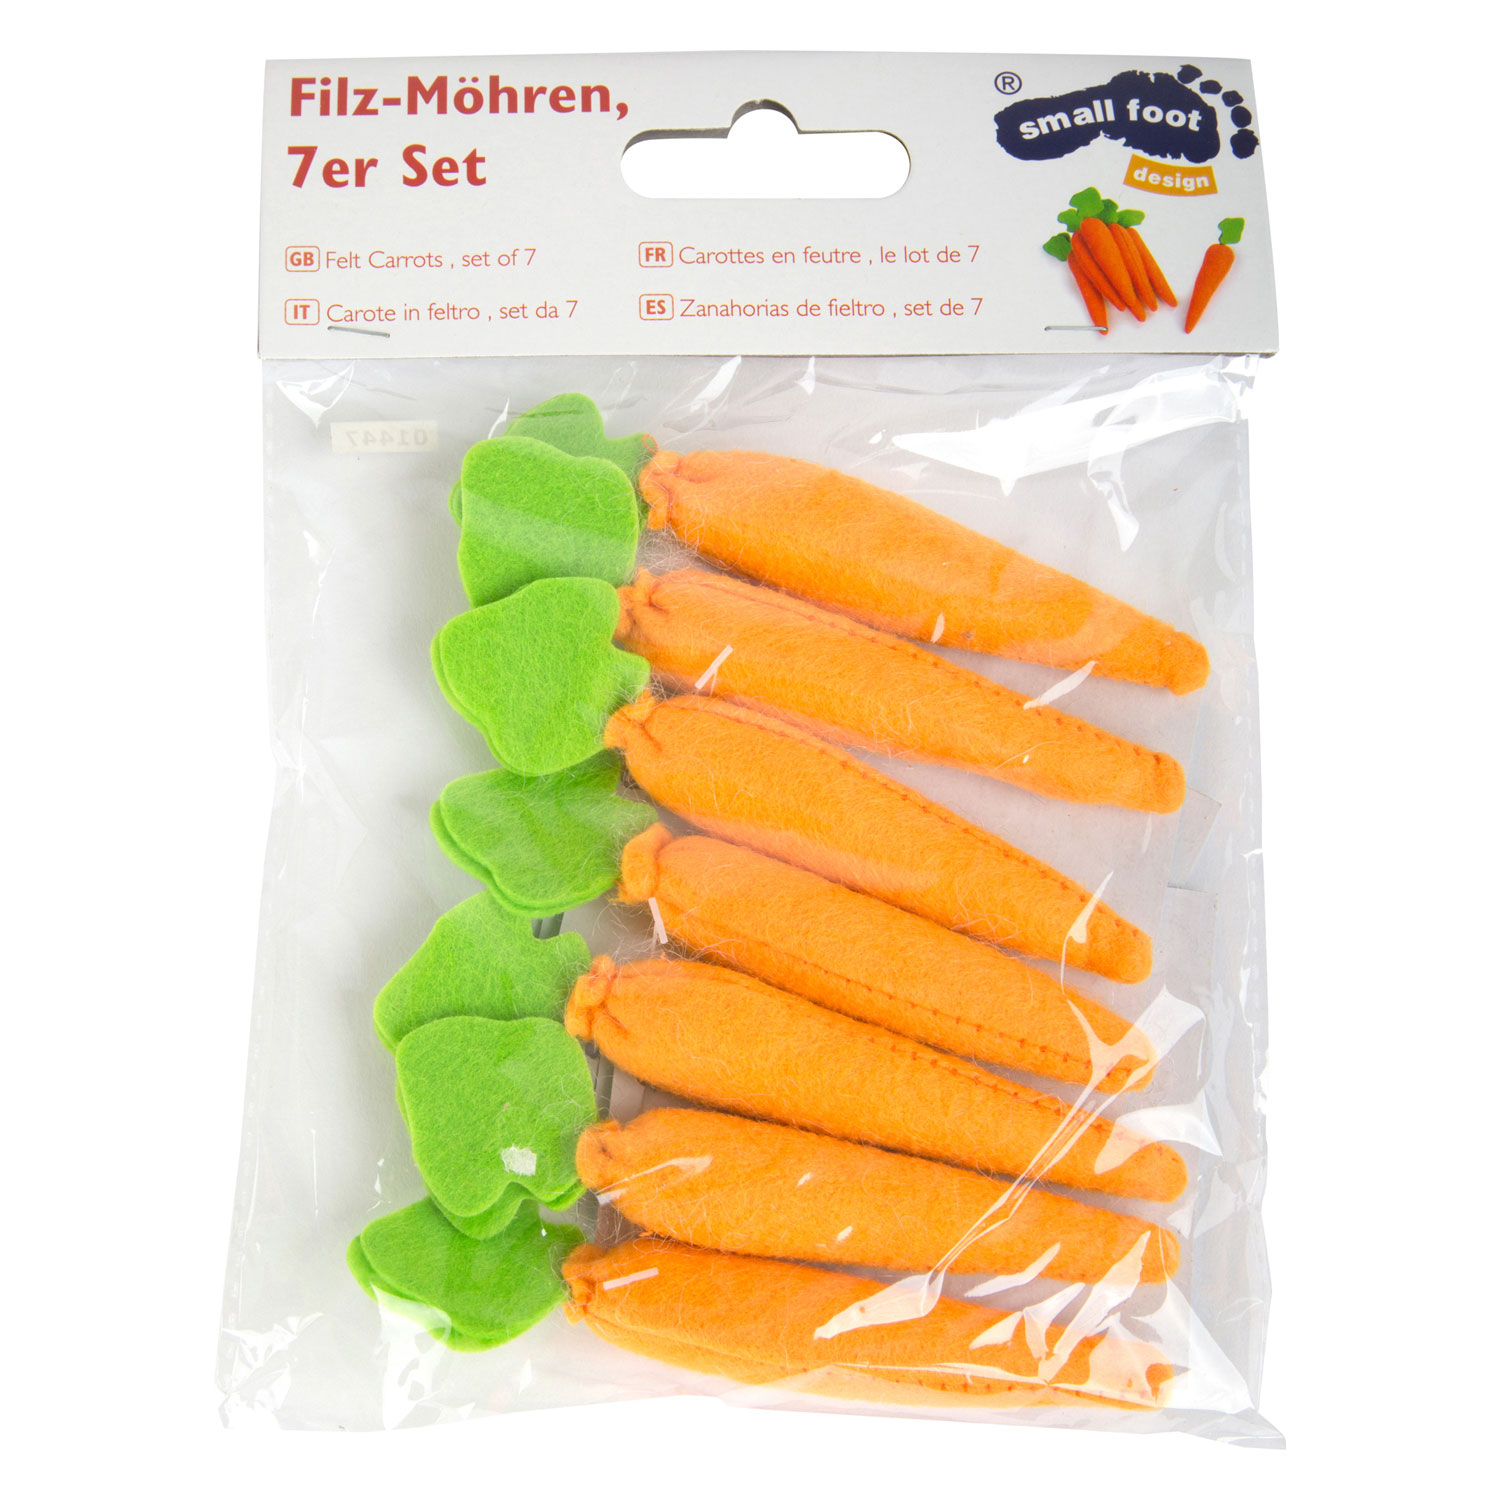 Small Foot - Toy Food Karotten Filz, 7dlg.